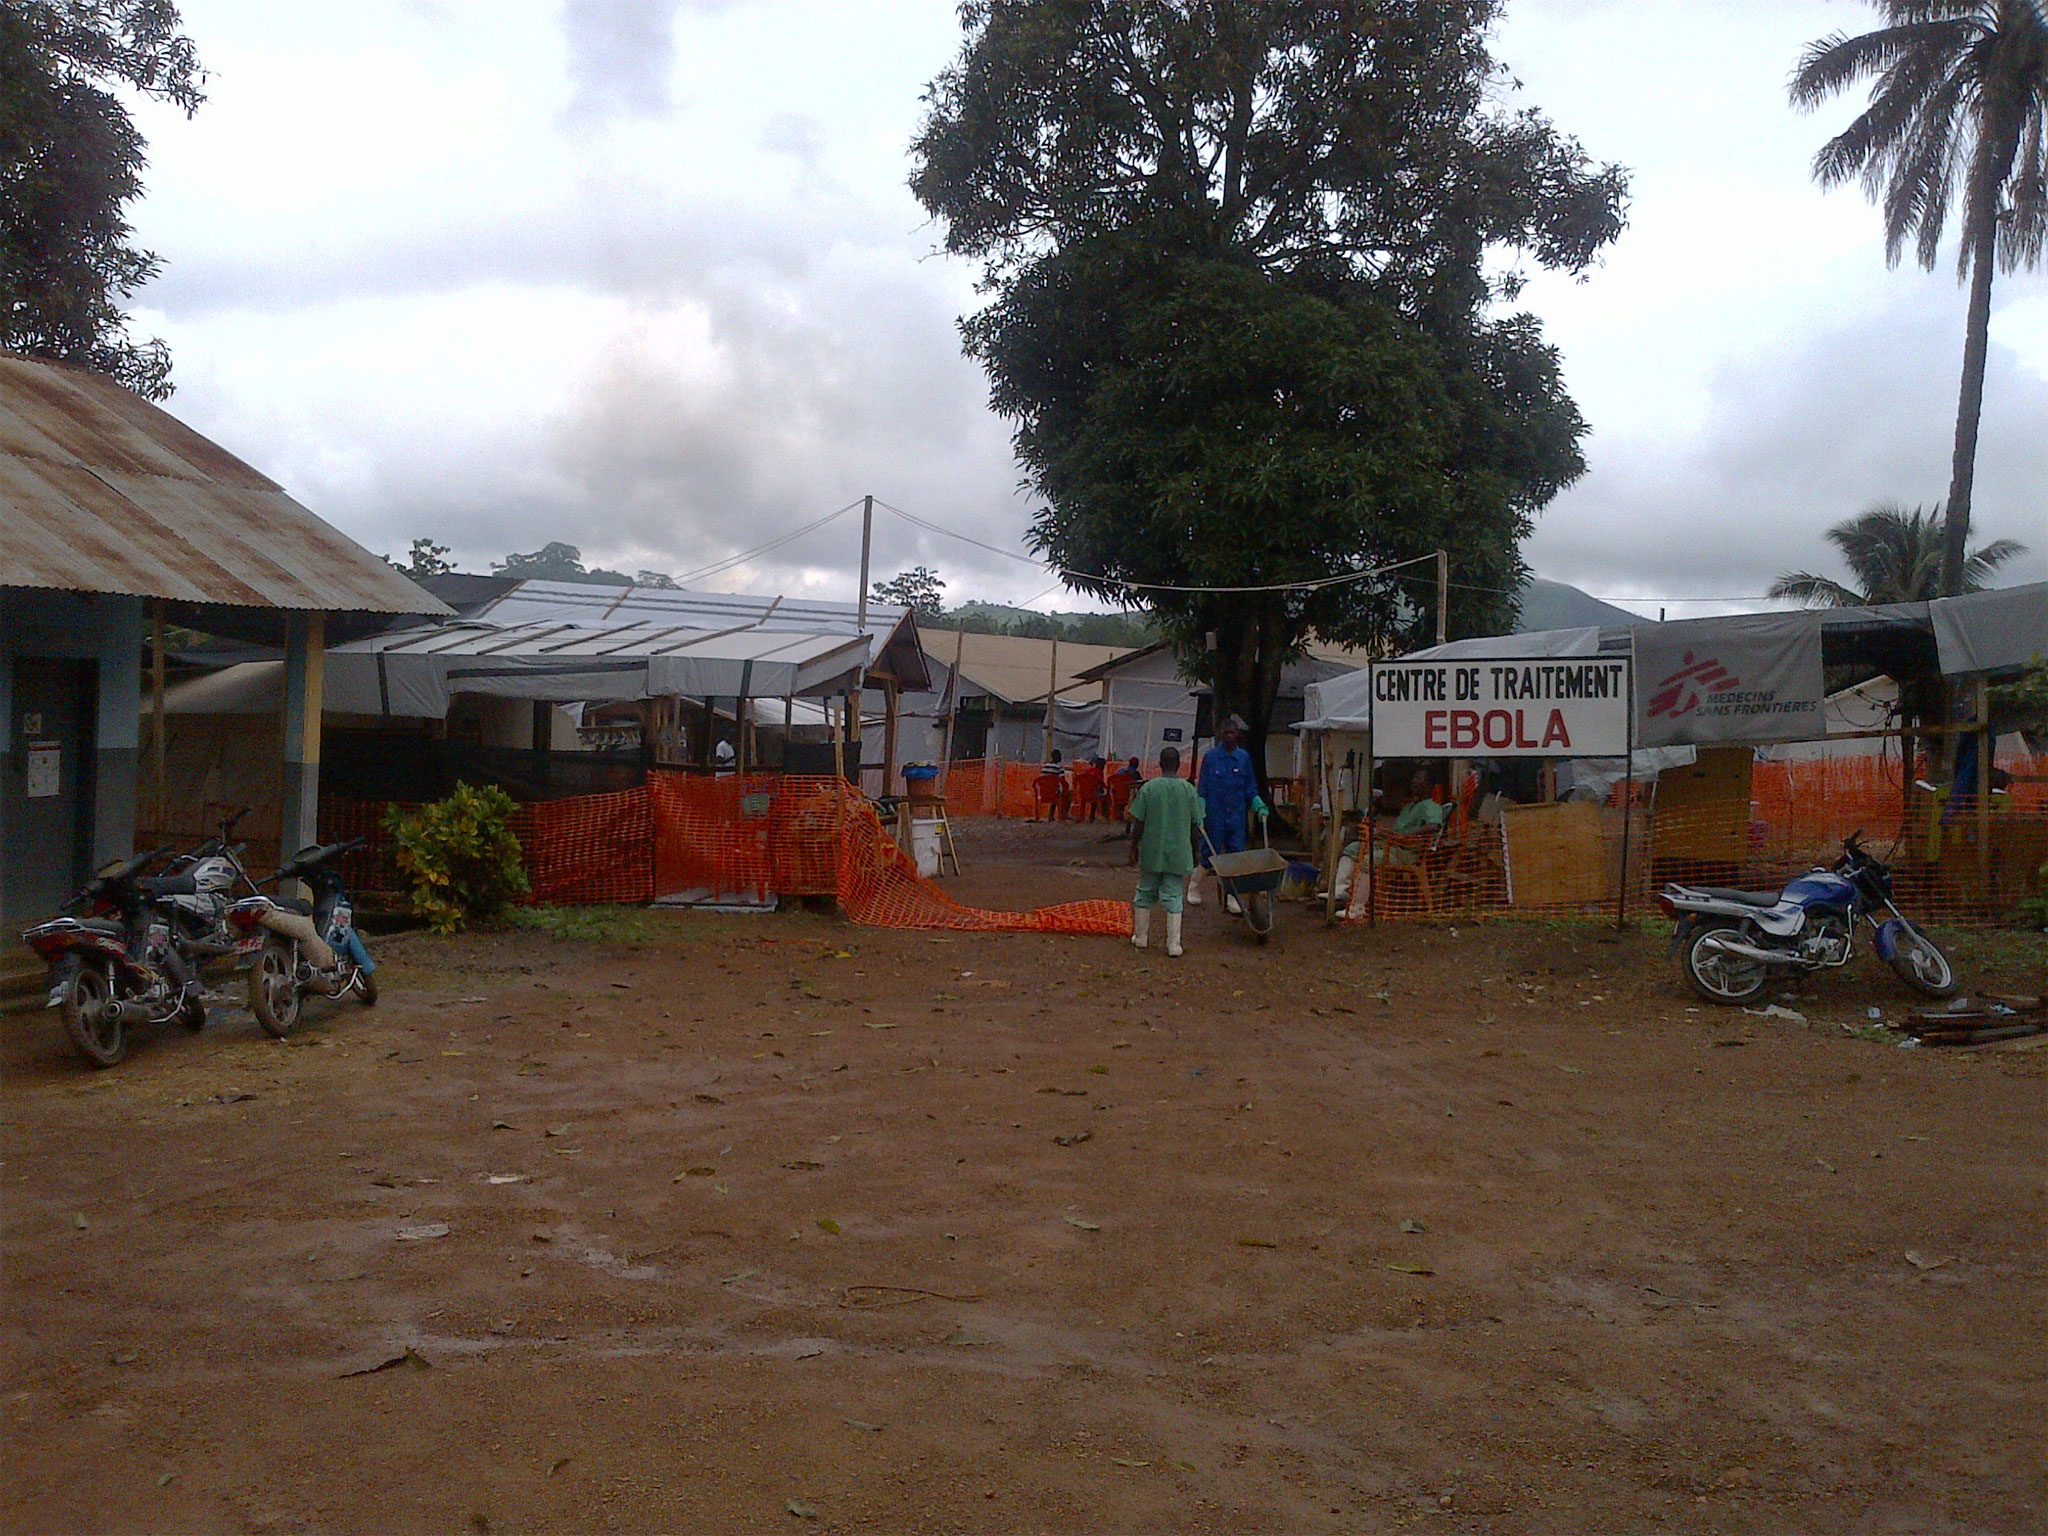 Centre de traitement Guinée, Ébola 2014